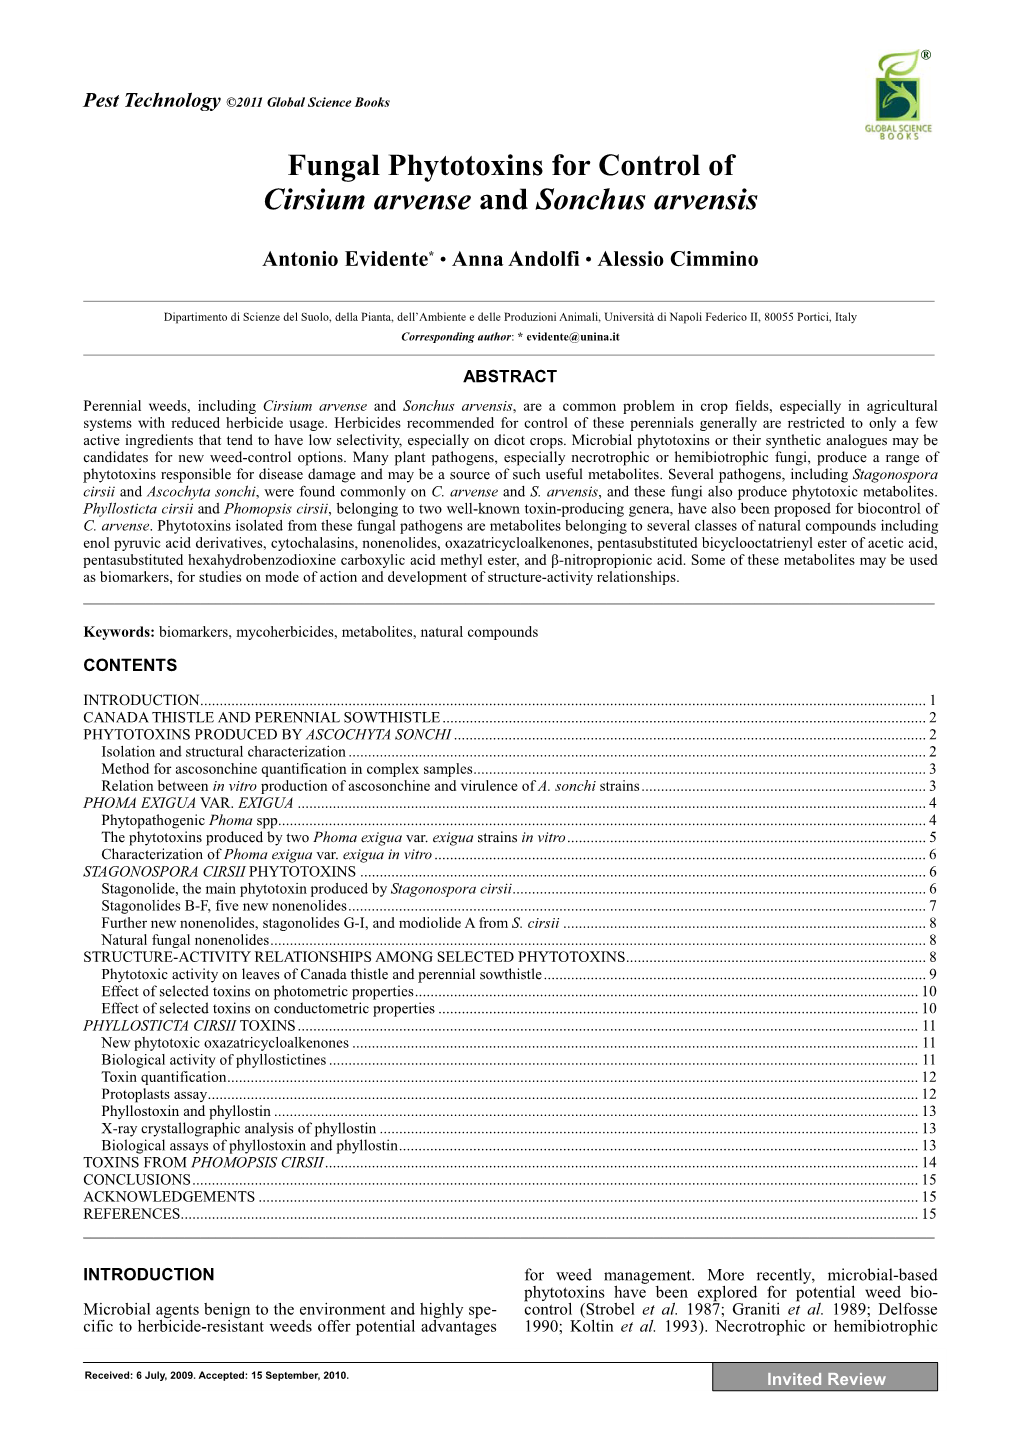 Fungal Phytotoxins for Control of Cirsium Arvense and Sonchus Arvensis Antonio Evidente* • Anna Andolfi • Alessio Cimmino